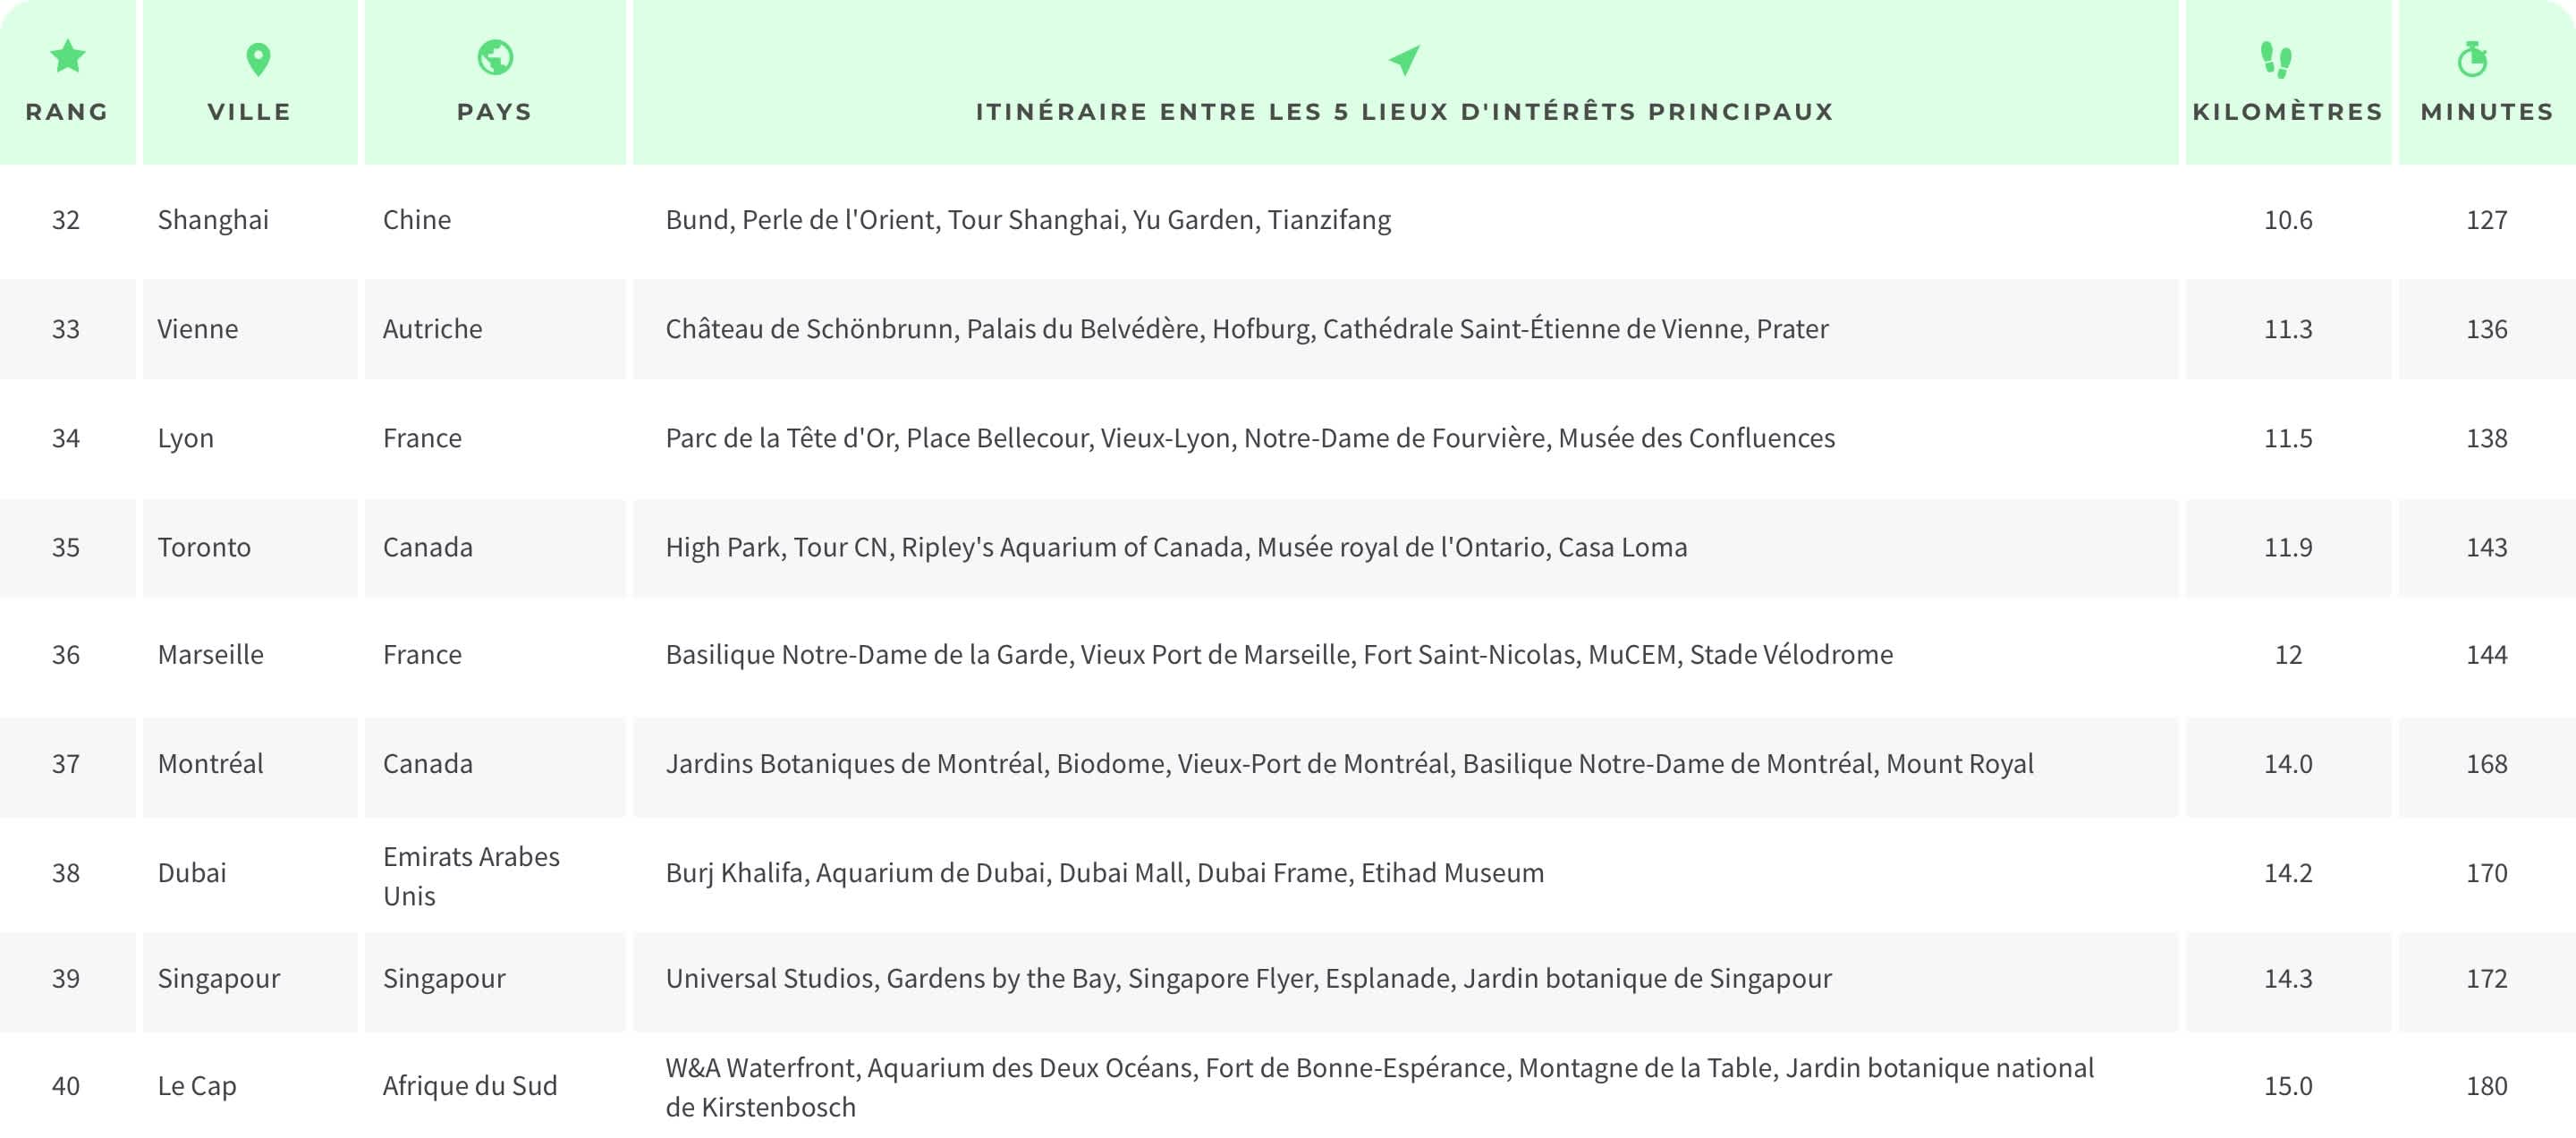 Classement des villes les plus accessibles à pied selon une étude Tourlane.fr, rang 32 à 40.
